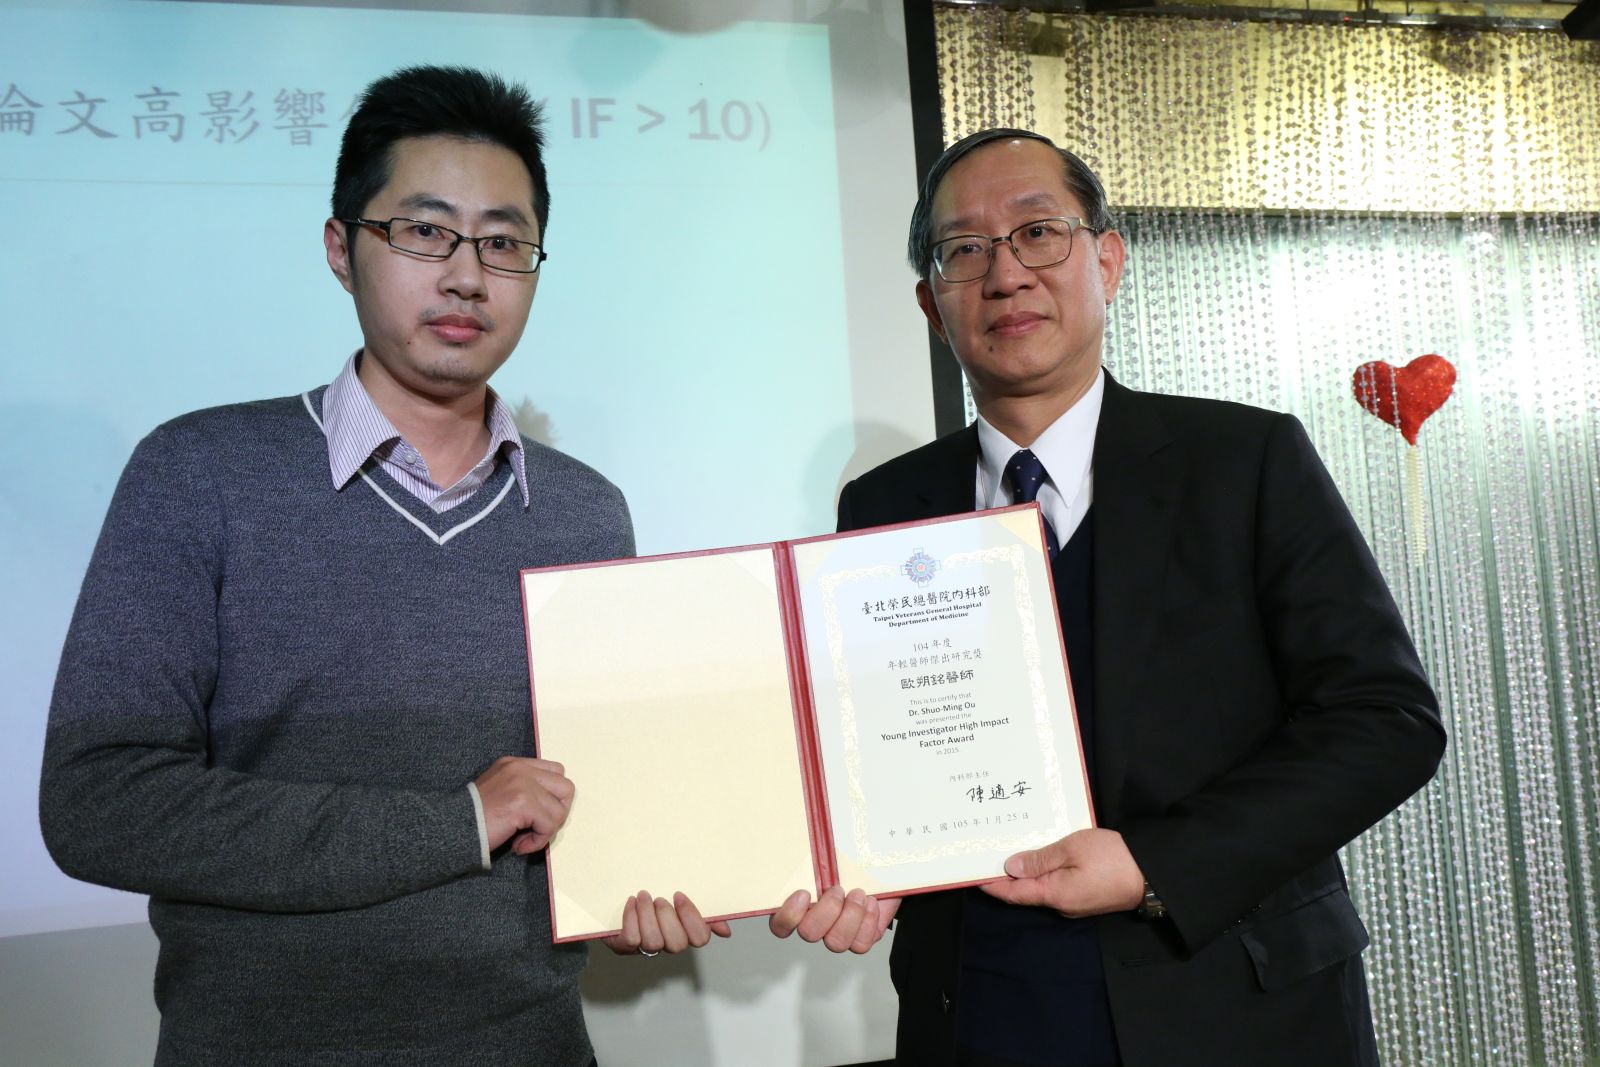 本科歐朔銘醫師榮獲李發耀副院長頒發104年度內科部年輕醫師傑出研究獎。